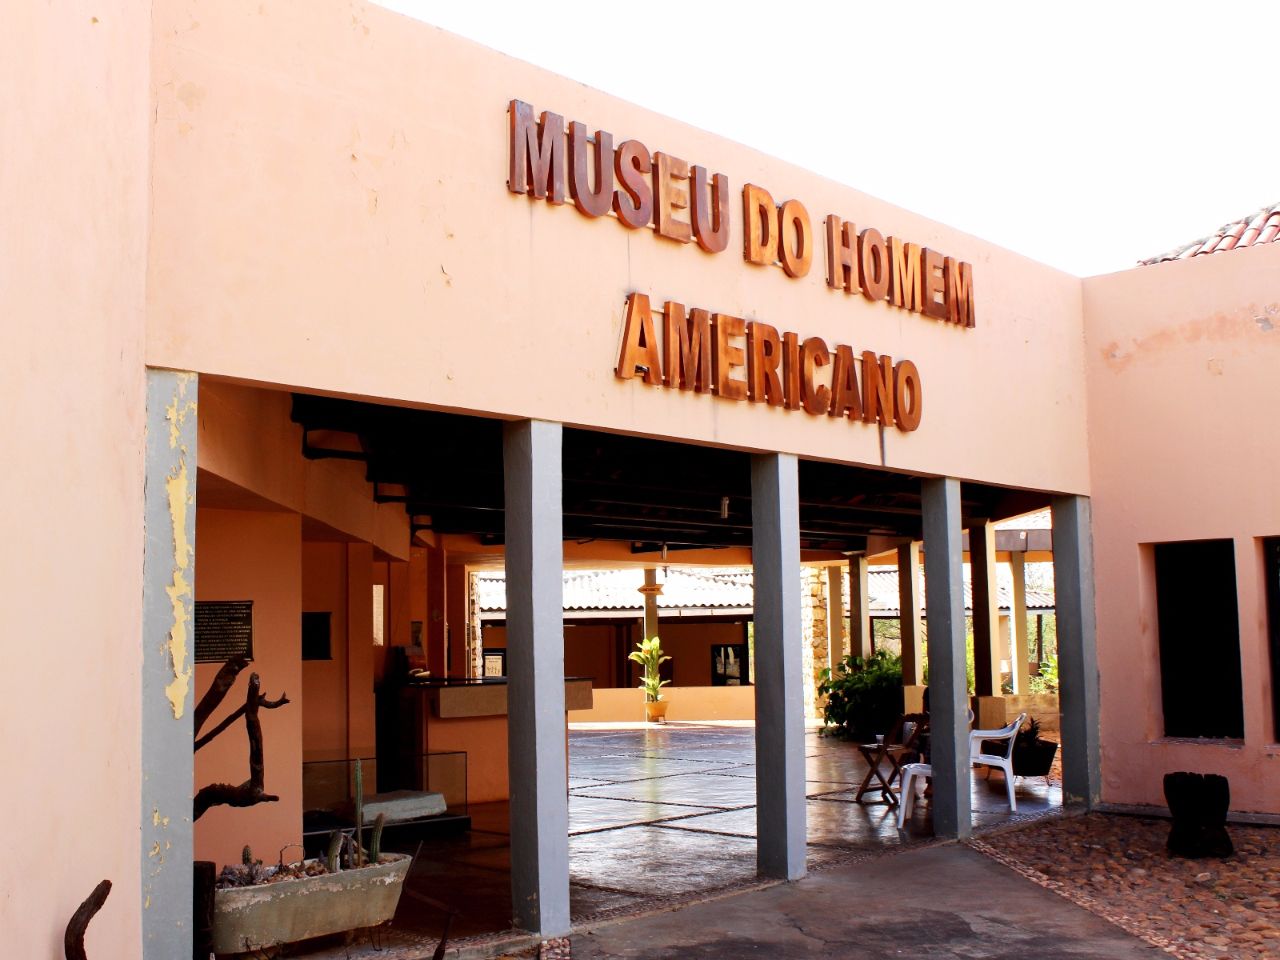 Археологический музей нацпарка Серра-да-Капивара / Museu do Homem Americano